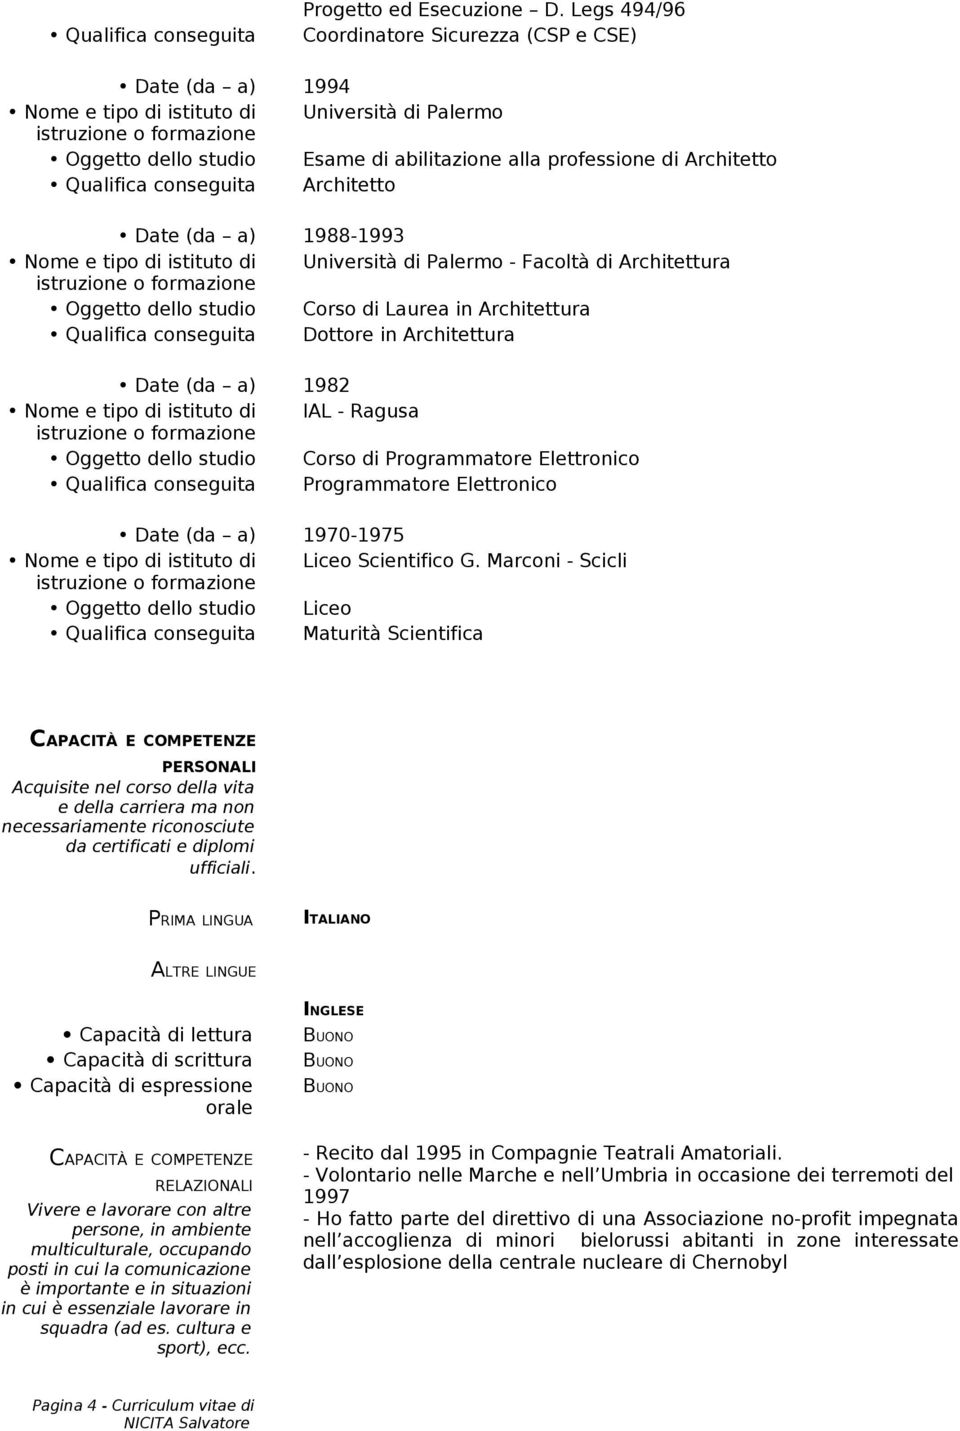 (da a) 1988-1993 Università di Palermo - Facoltà di Architettura Oggetto dello studio Corso di Laurea in Architettura Qualifica conseguita Dottore in Architettura Date (da a) 1982 IAL - Ragusa